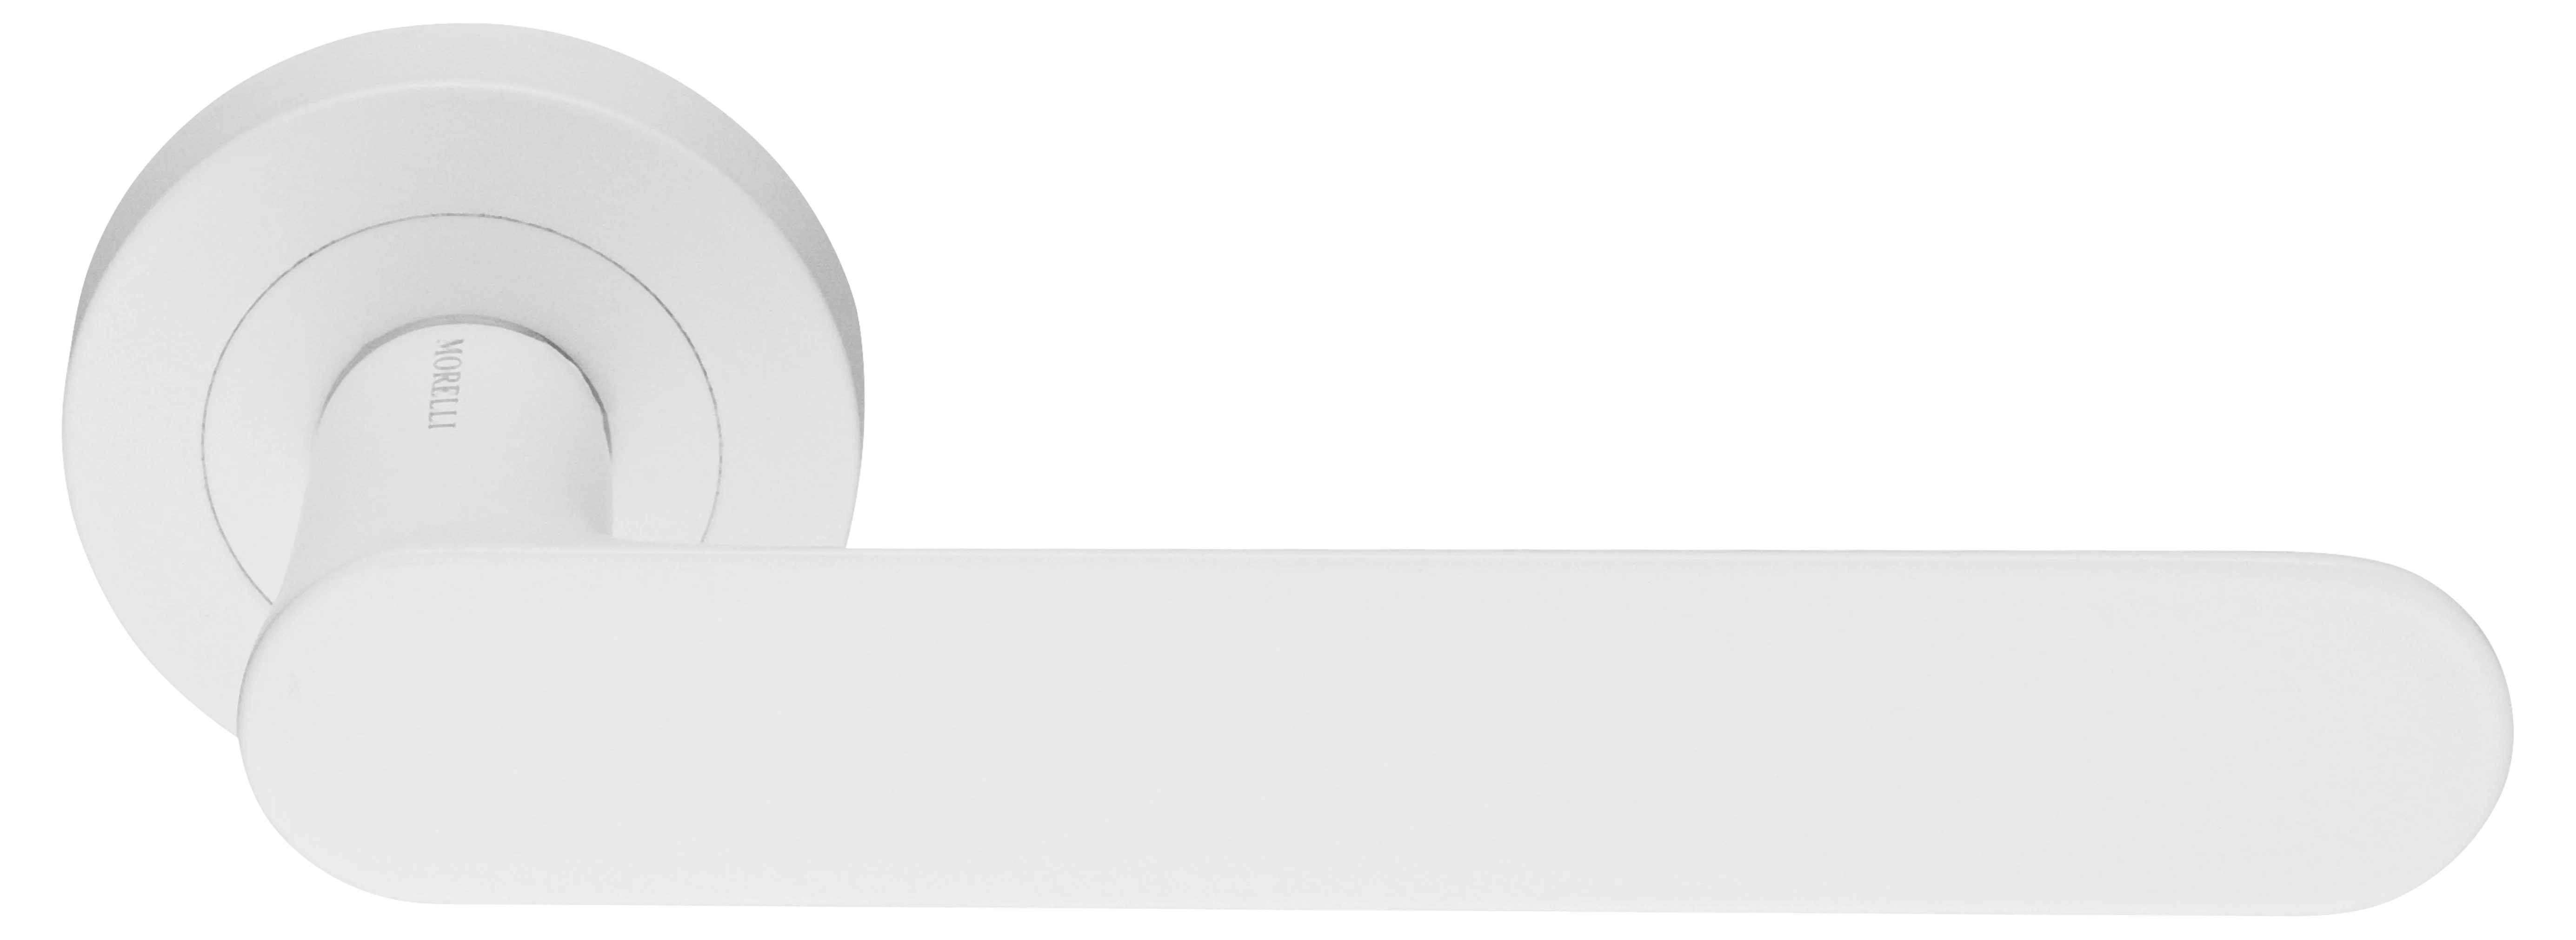 LE BOAT R2 BIA, ручка дверная, цвет - белый фото купить Ижевск